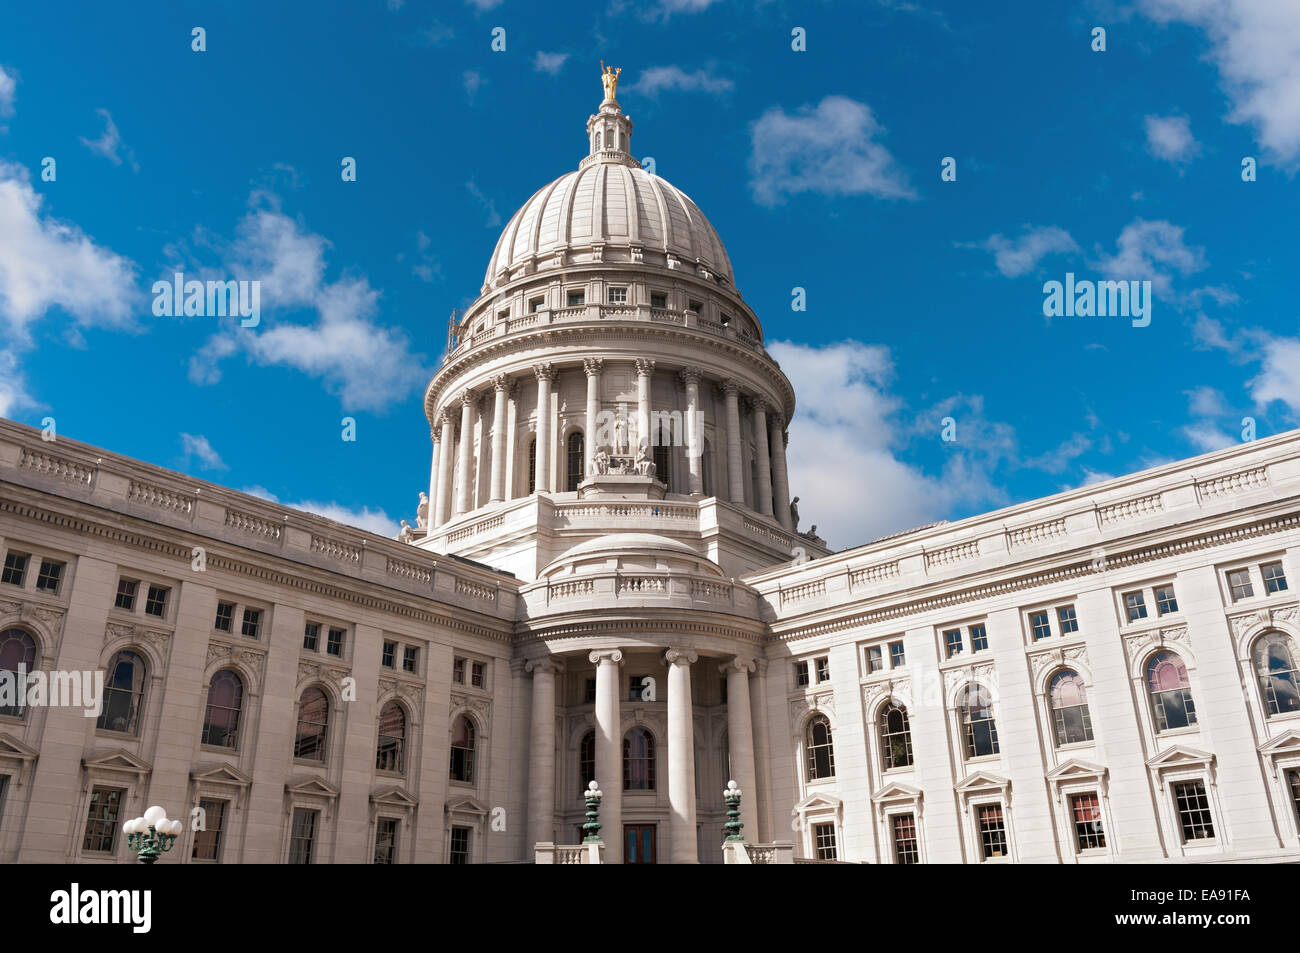 L'architecture de style Beaux Arts du Wisconsin State Capitol et dôme sous un ciel bleu Banque D'Images